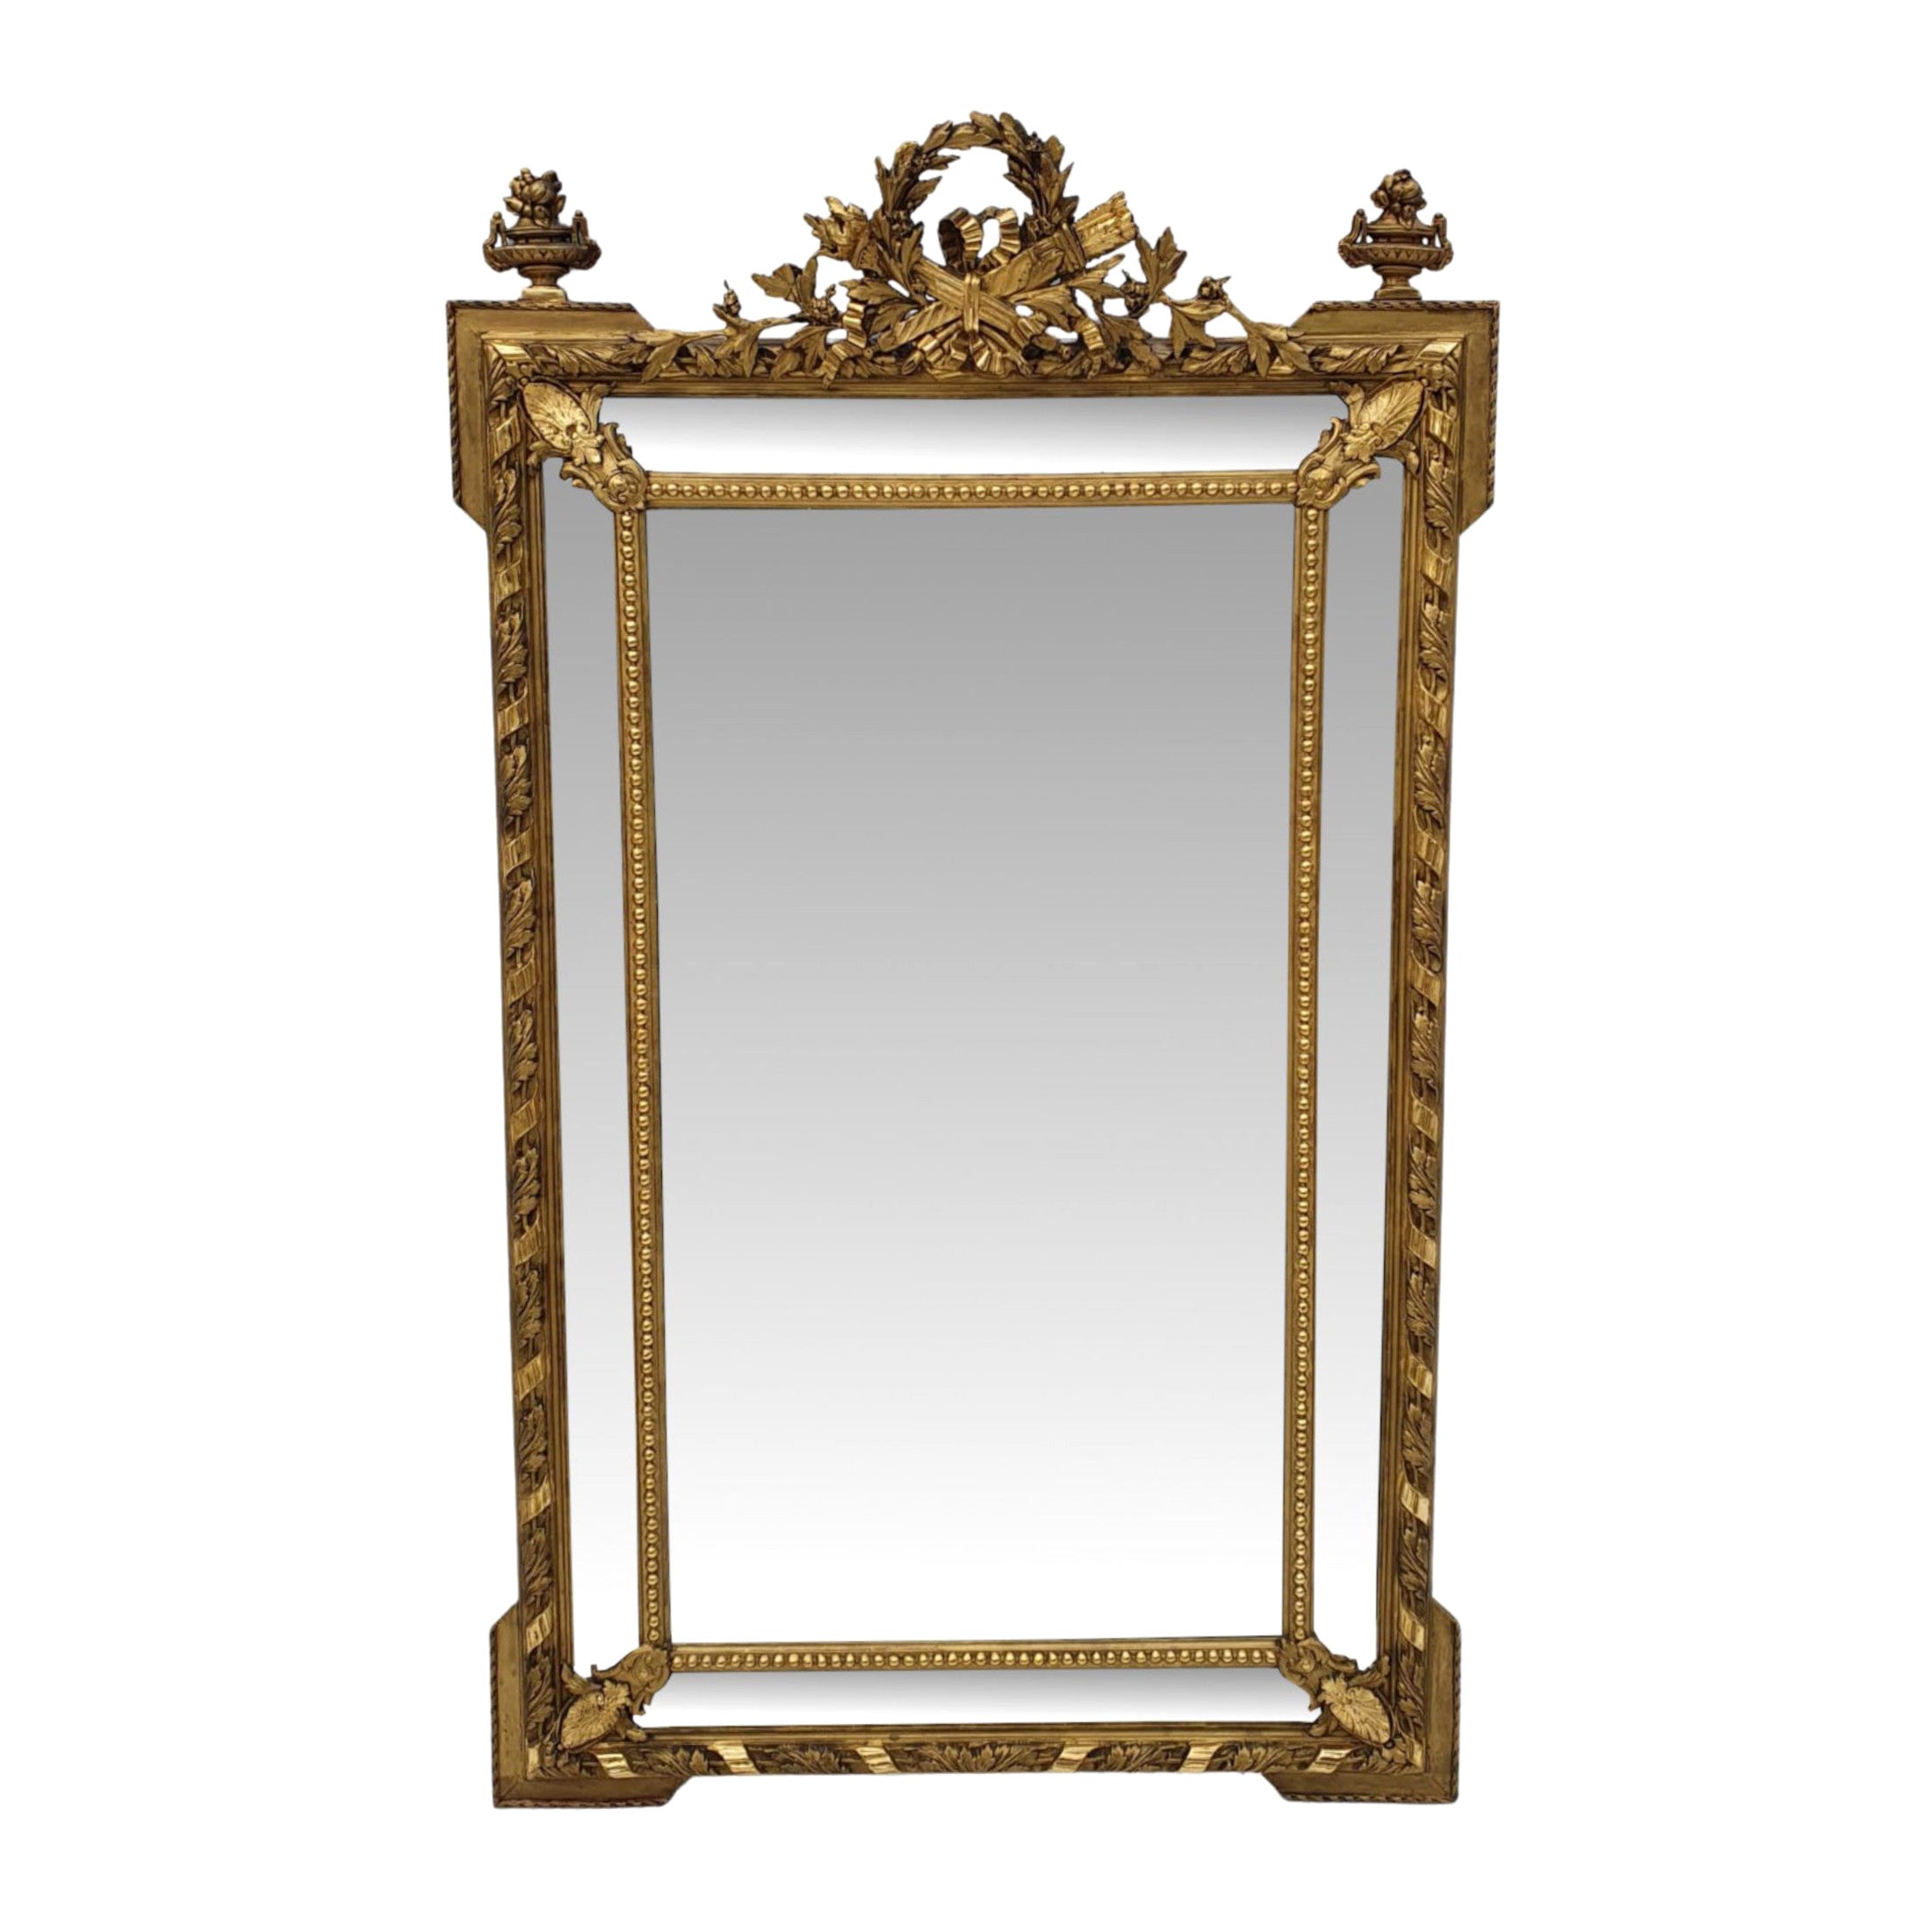 Très beau grand miroir en bois doré du 19ème siècle, surmonté d'un manteau ou d'un hall d'entrée